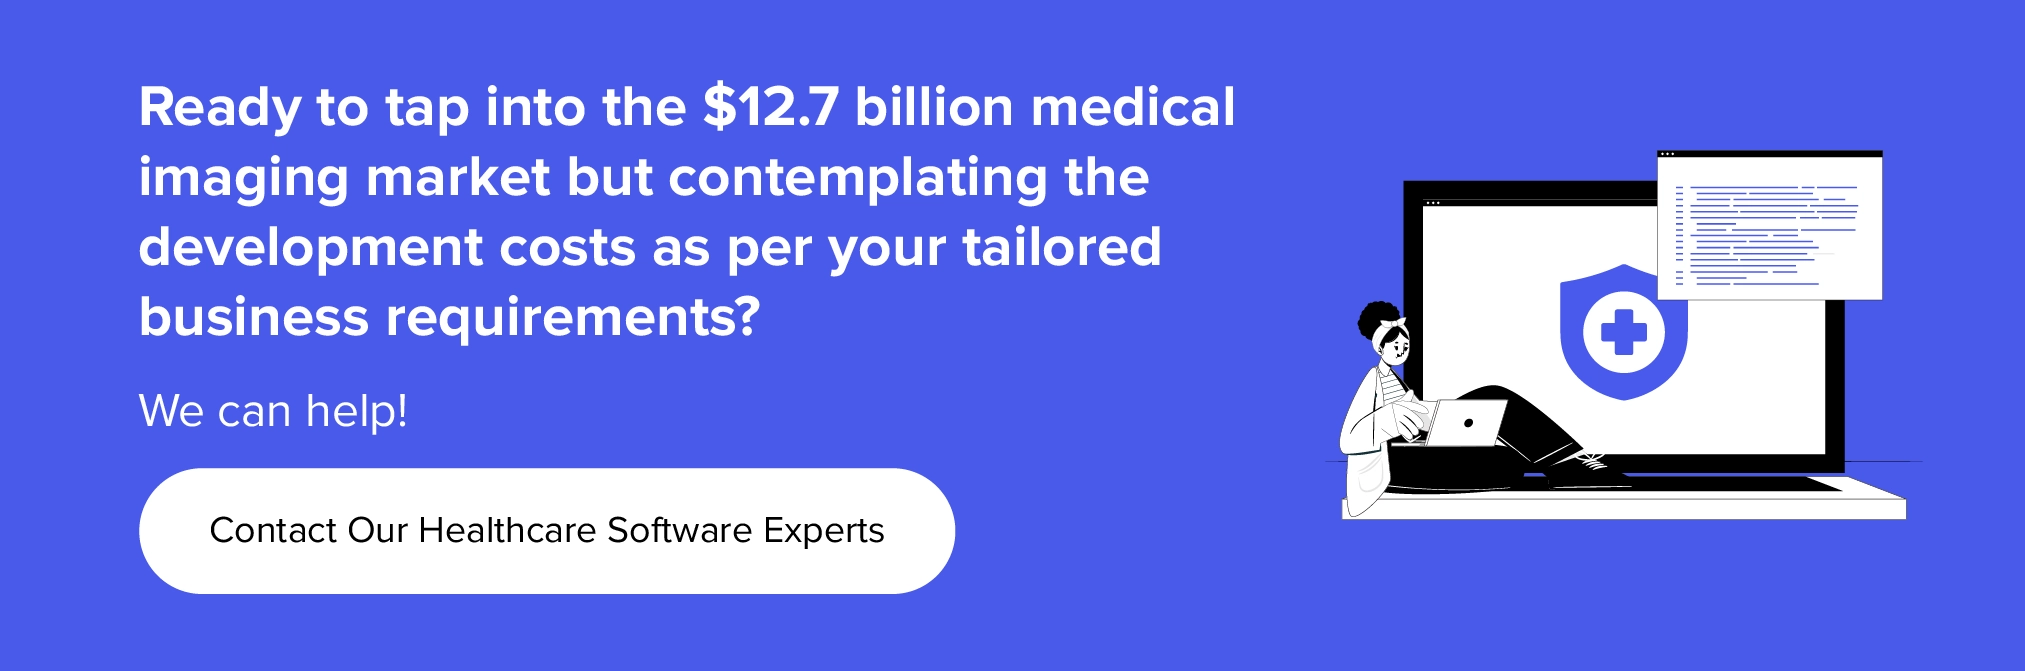 colabore con nosotros para aprovechar el creciente mercado de software de imágenes médicas